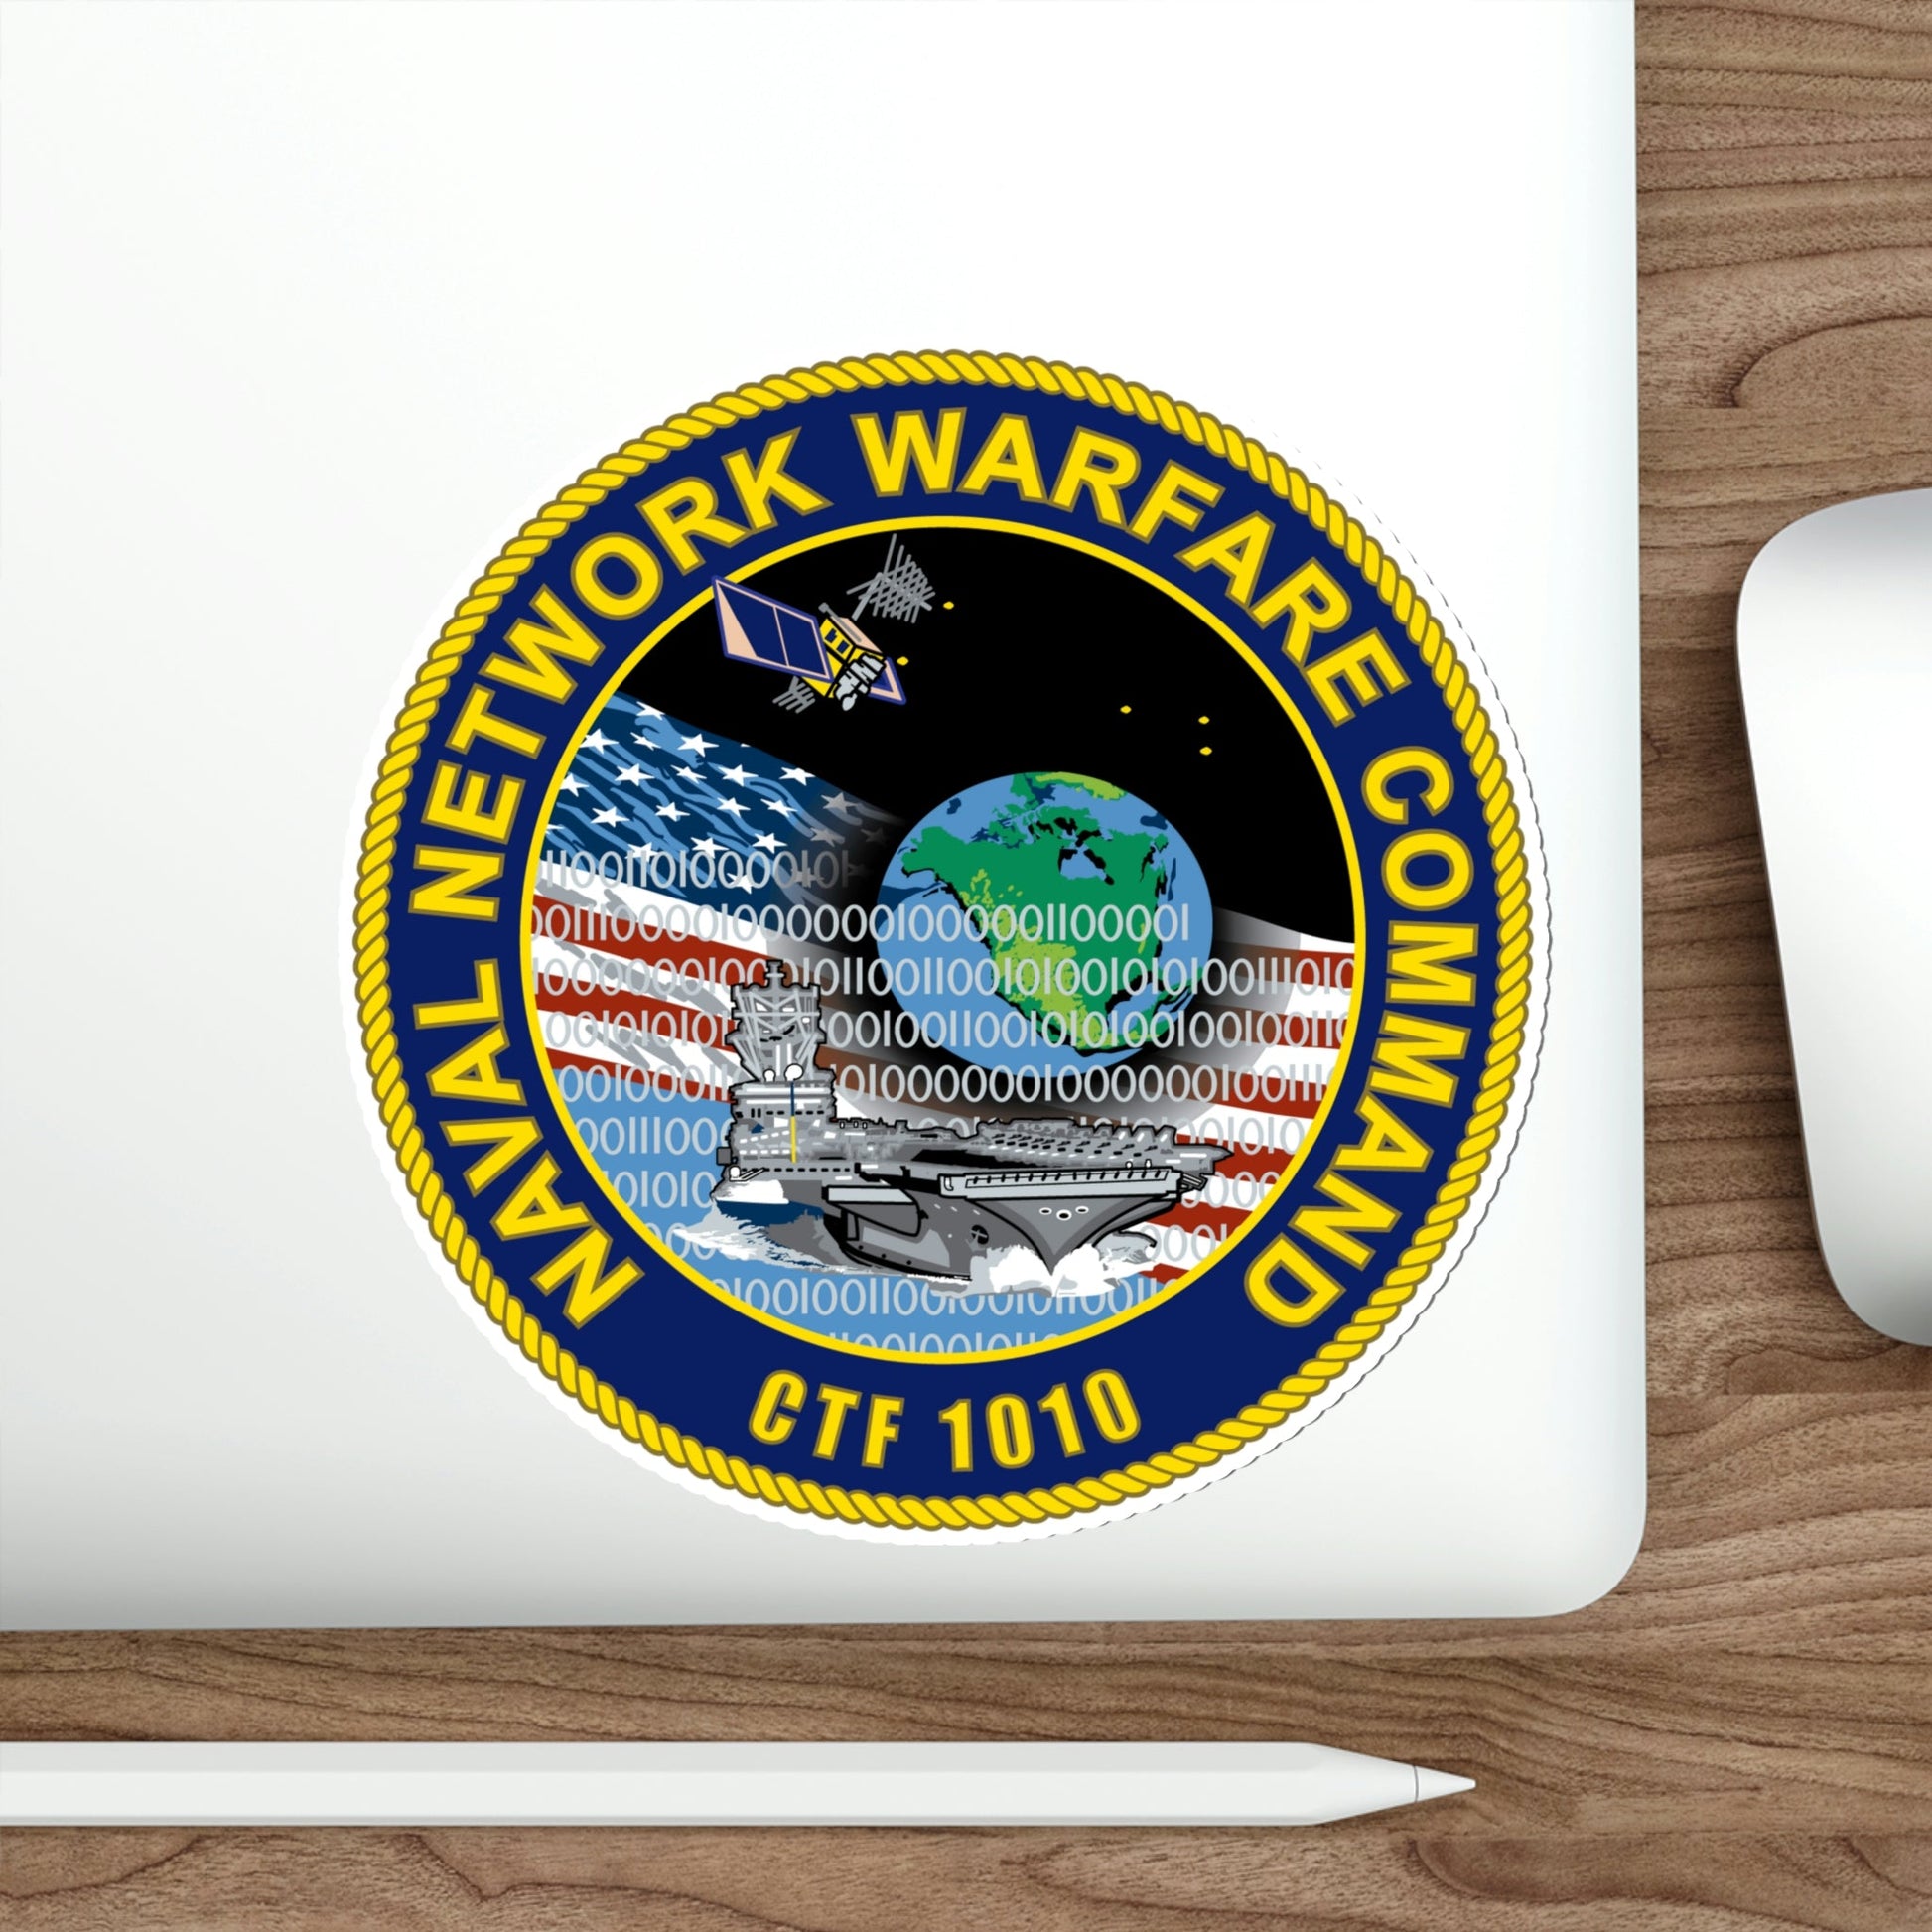 Naval Network Warfare Command CFT 1010 (U.S. Navy) STICKER Vinyl Die-Cut Decal-The Sticker Space